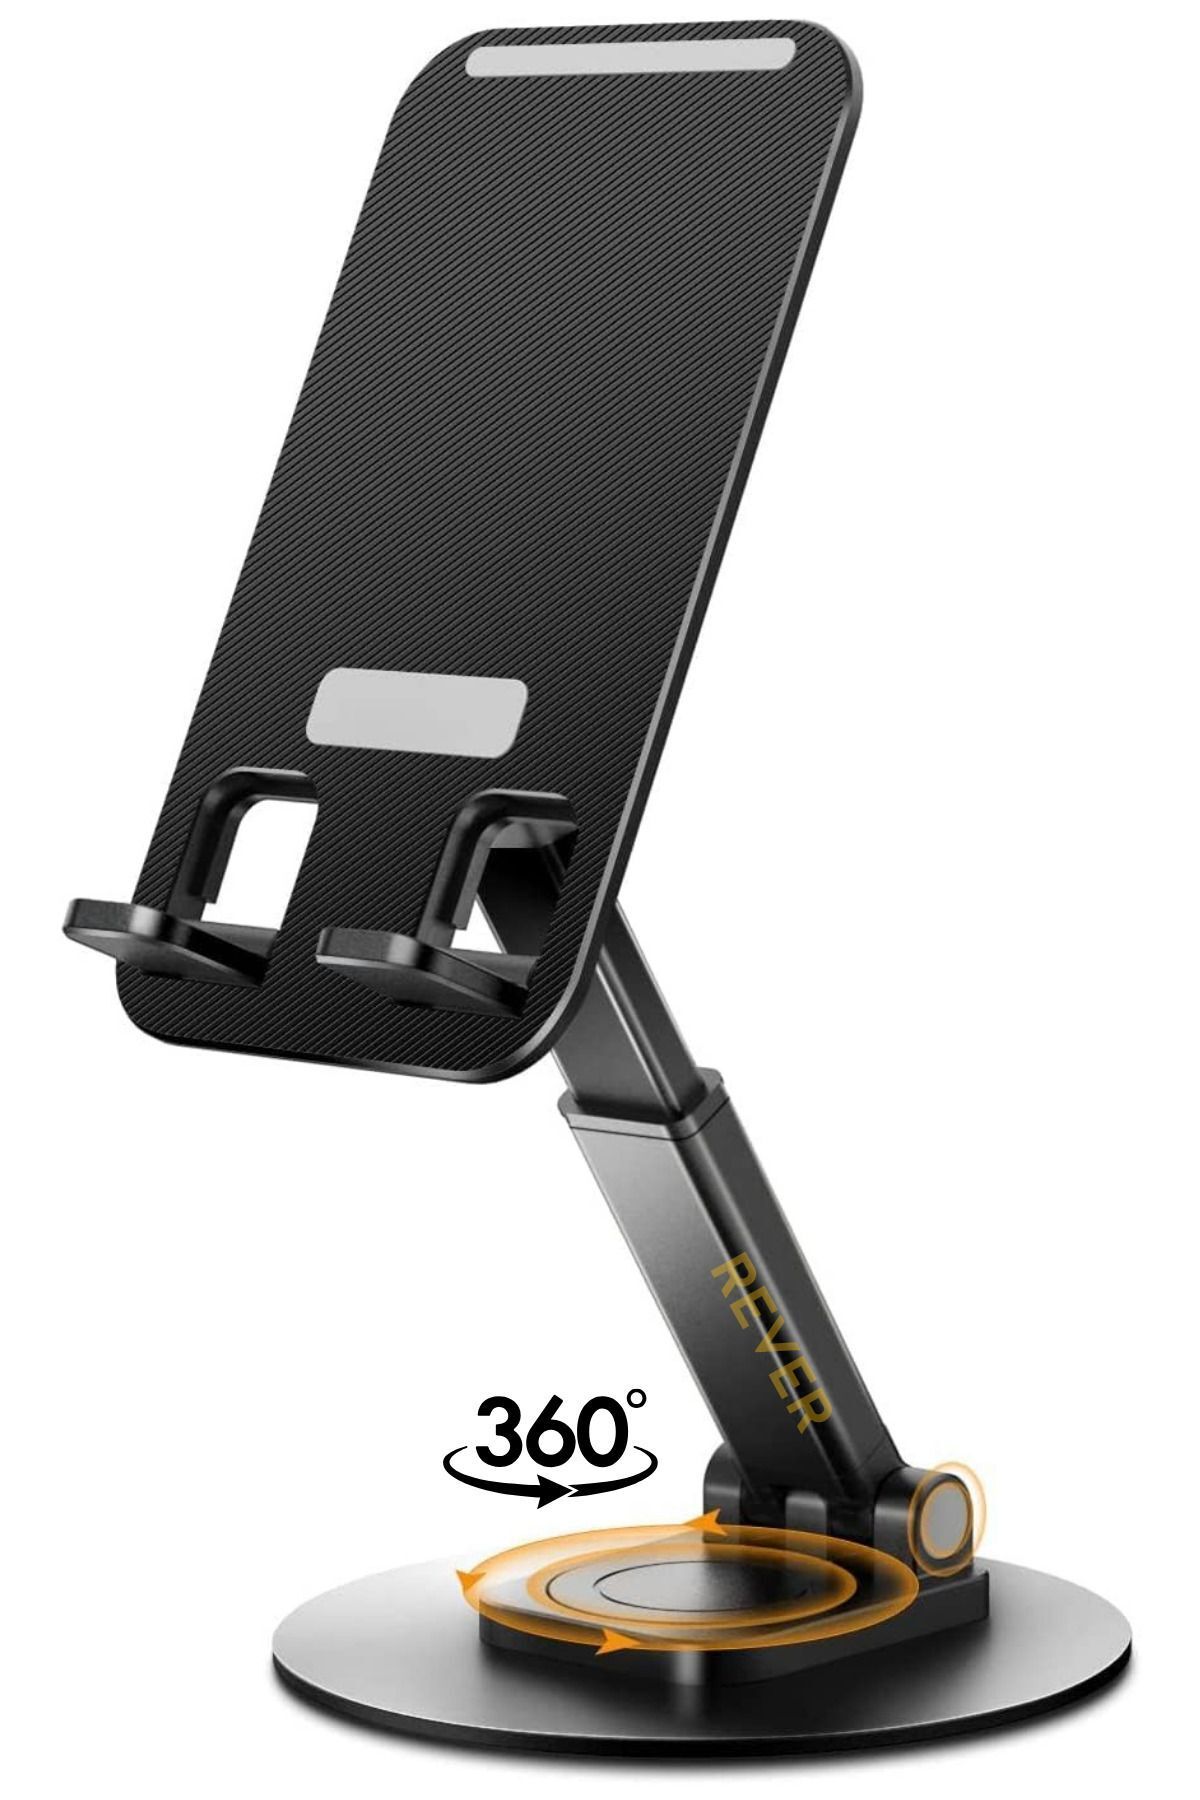 Rever Masaüstü Telefon Standı Yükseklik Ayarlı 360° Derece Dönebilen Cep Telefonu Tutucu Stant